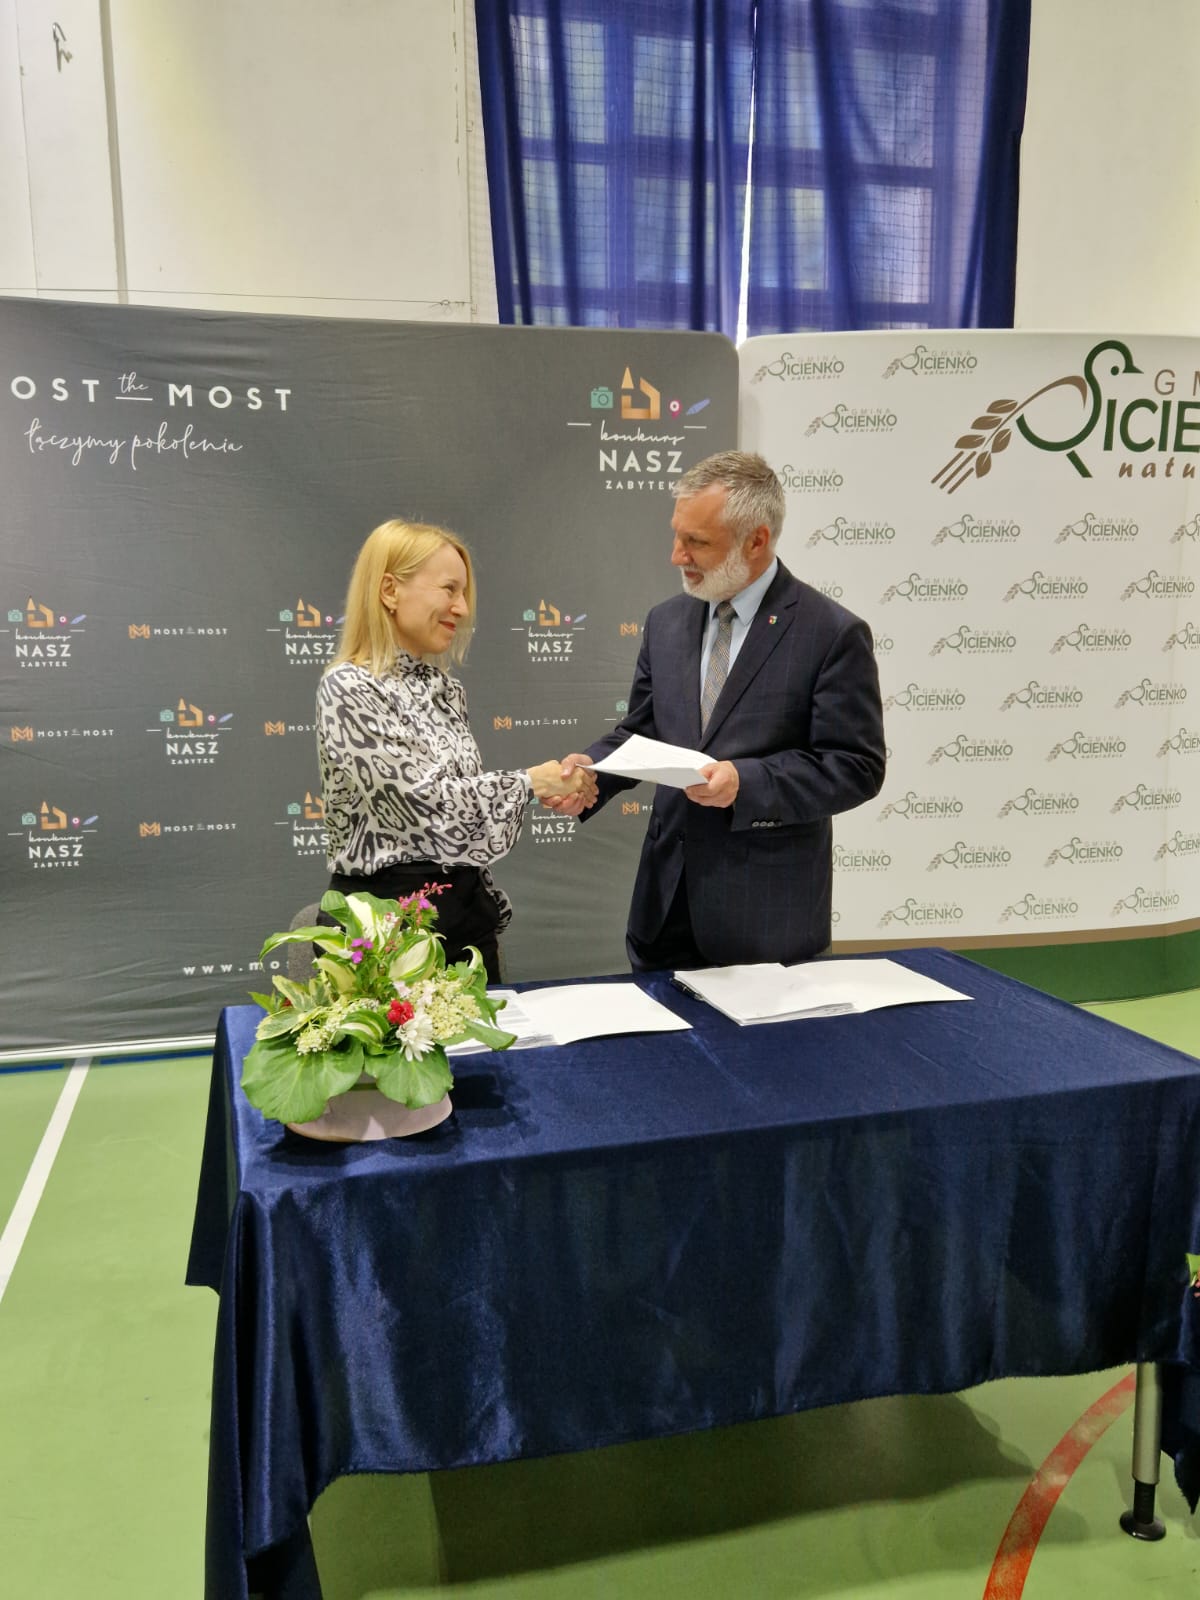 Podpisanie umowy - 1 mln złotych od Fundacji Most the Most dla Zespołu dworsko-parkowego w Kruszynie.